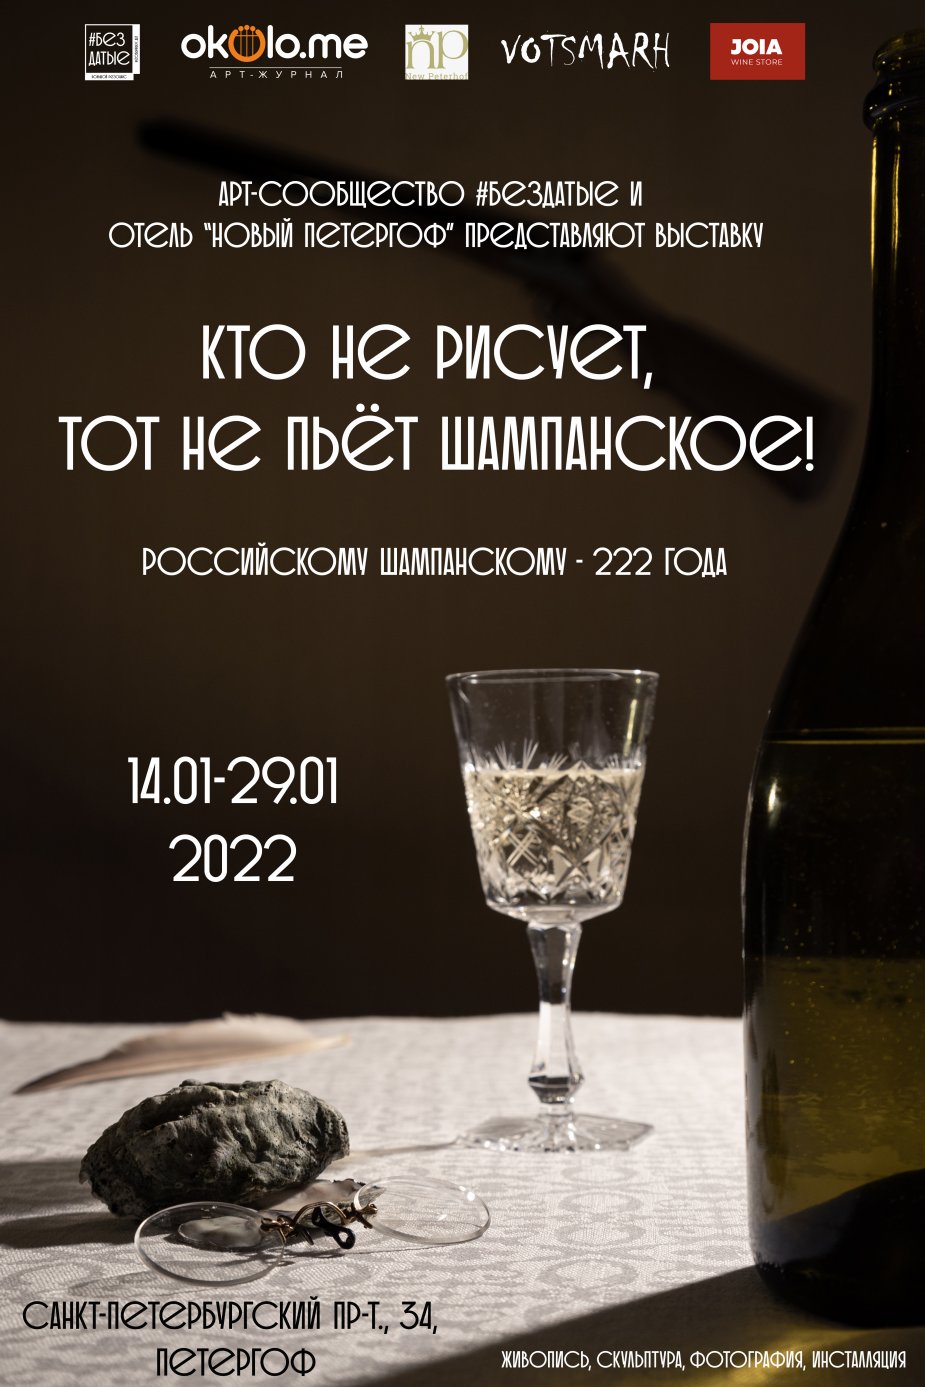 Российскому шампанскому 222 года